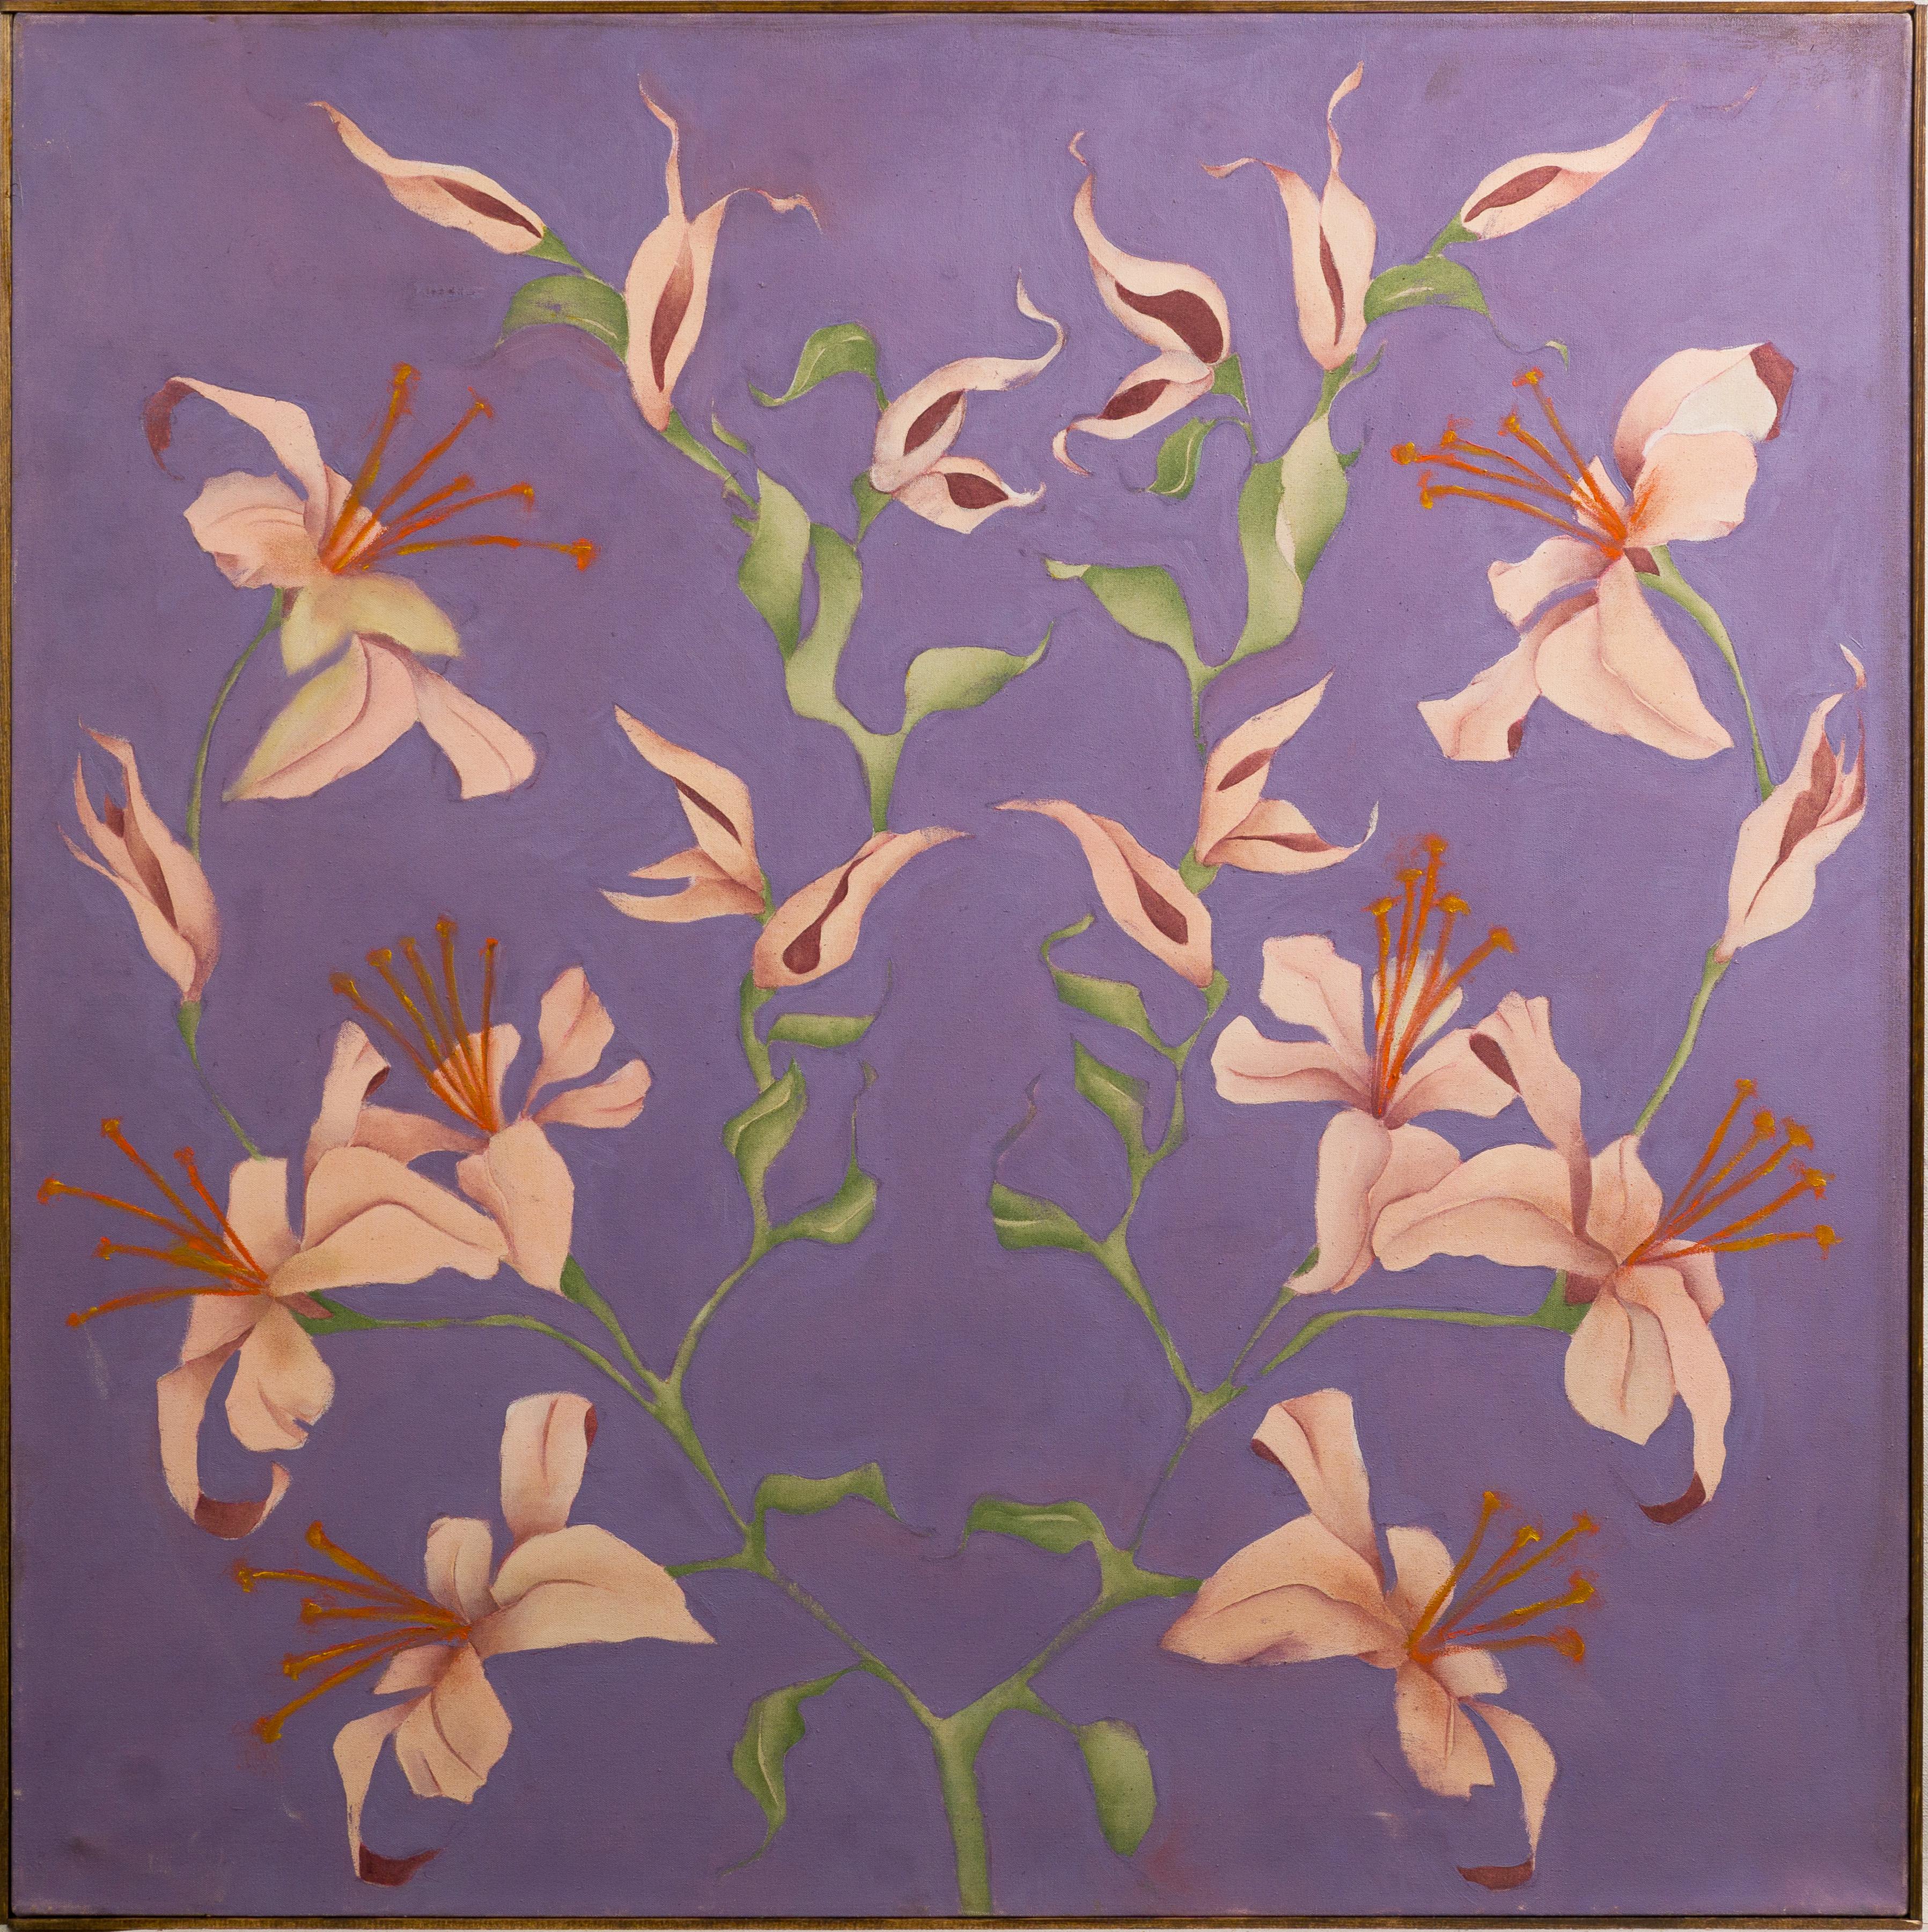 Still-Life Painting Abraham Pariente - Rare peinture à l'huile abstraite moderniste new-yorkaise israélienne d'une fleur d'importance précoce